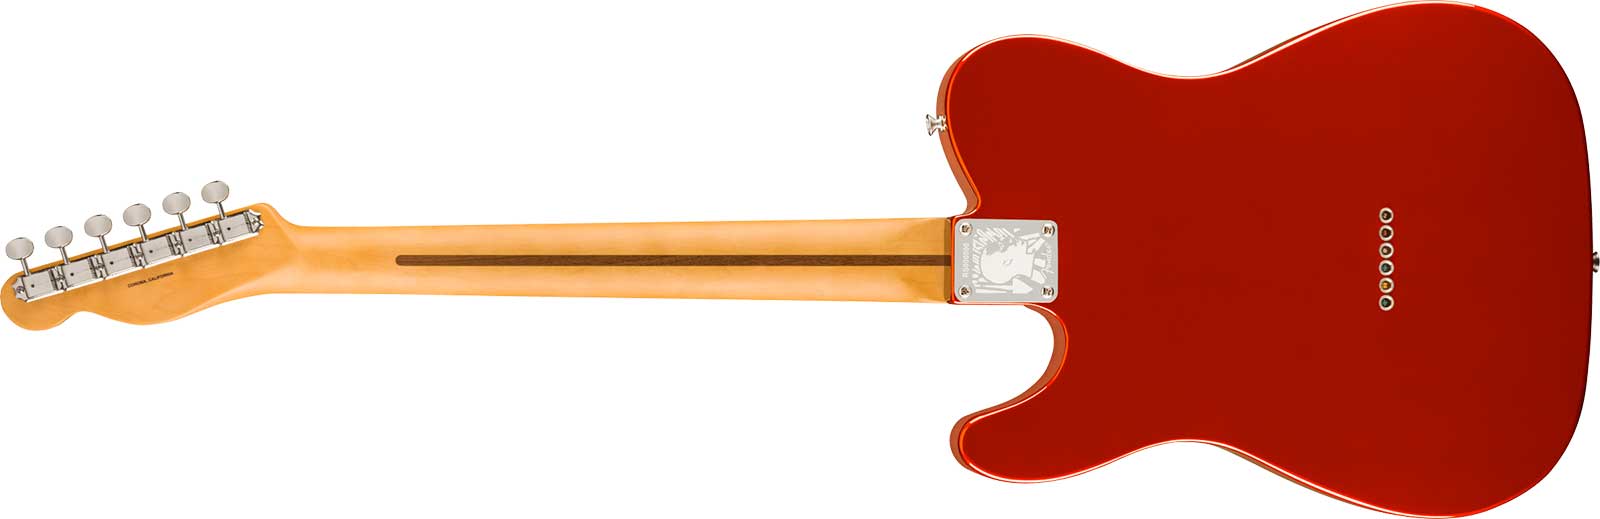 Fender Rafael Saadiq Tele Ltd Signature Usa 2s Ht Rw - Dark Metallic Red - Guitare Électrique Signature - Variation 1